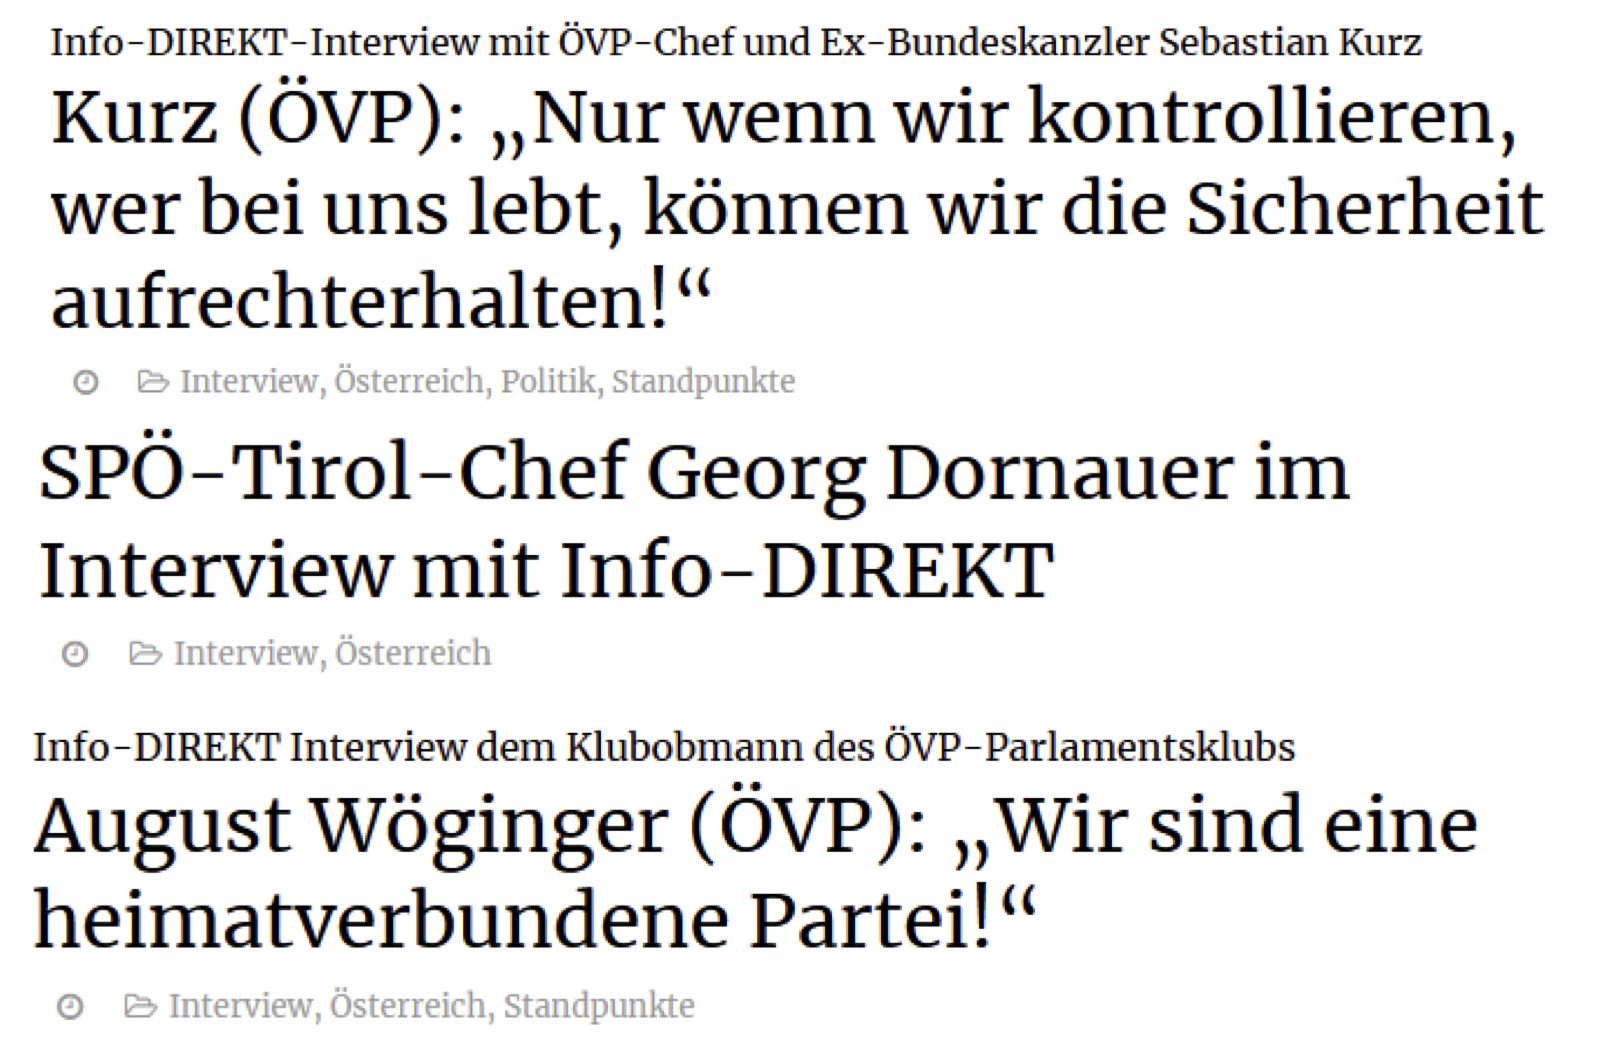 Interviews mit Info-Direkt: Kurz, Dornauer, Wöginger